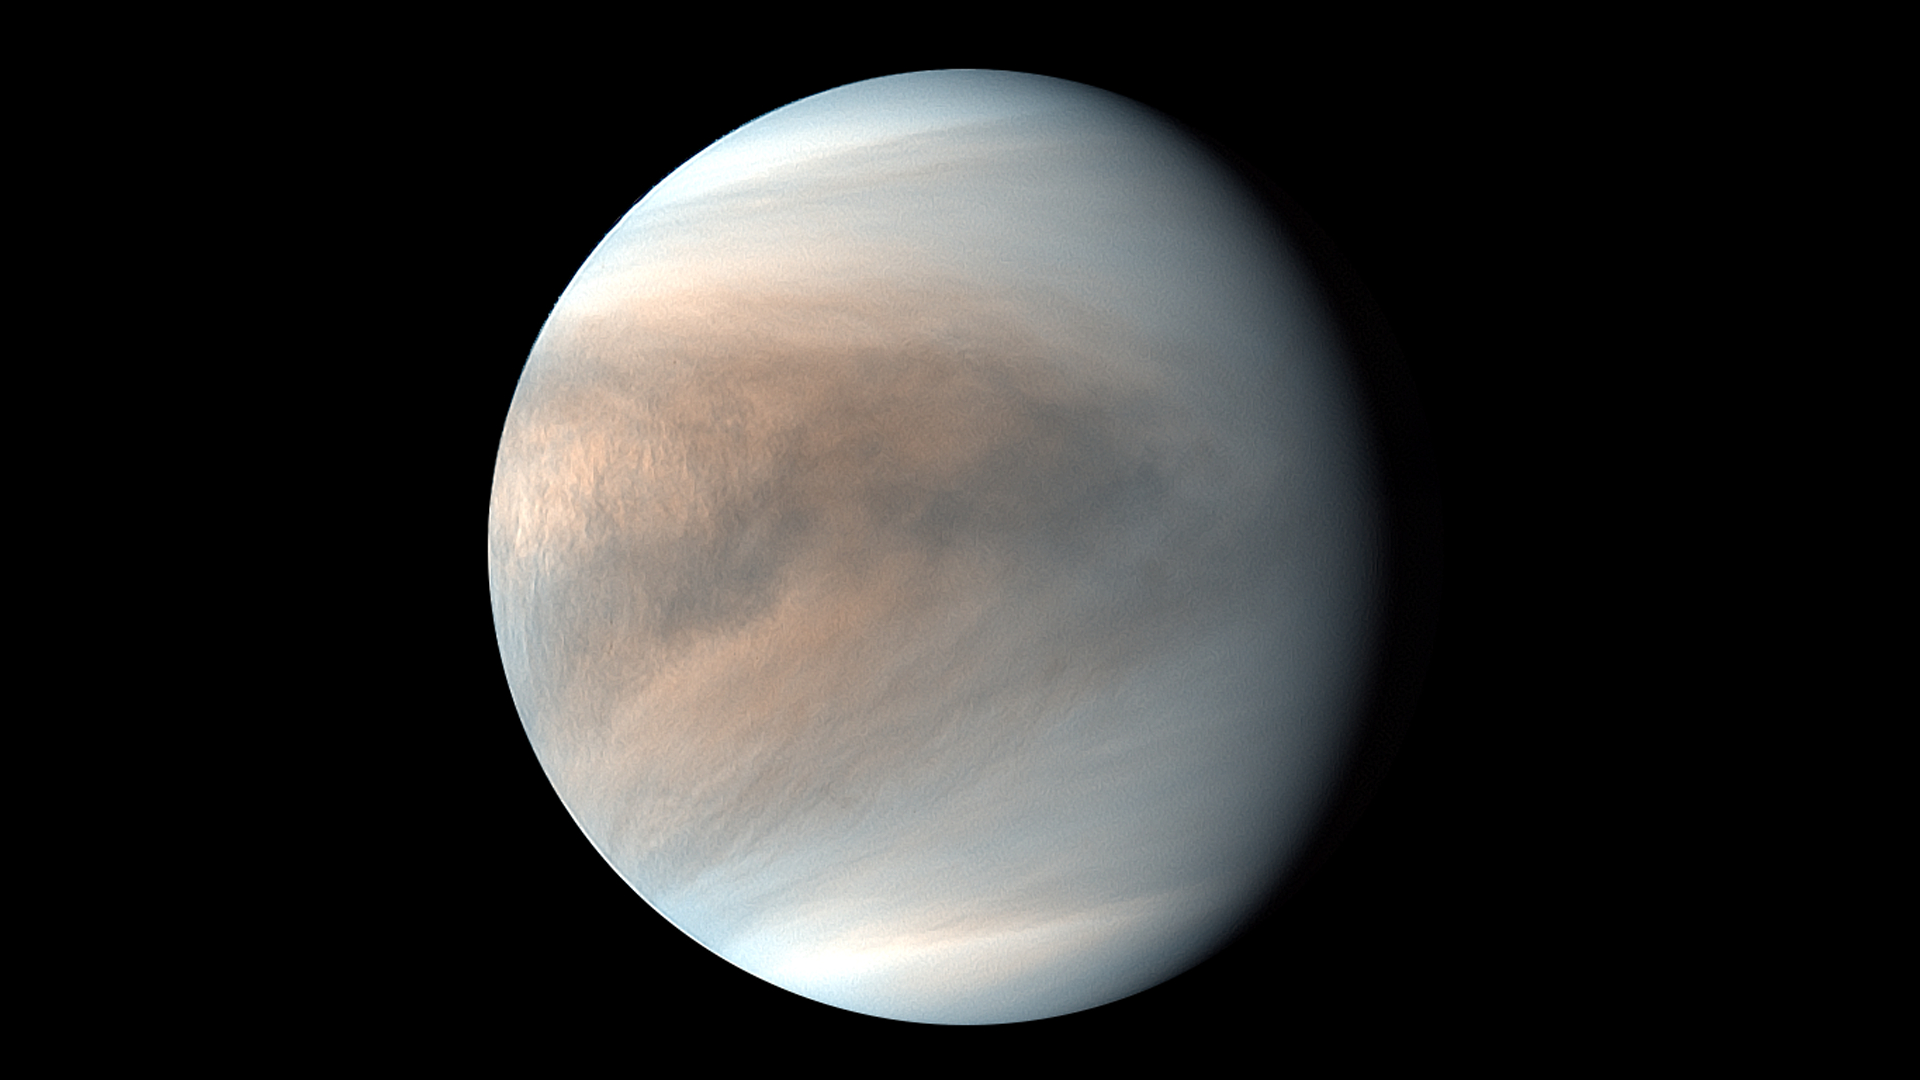 hazy swirls of white and brown cover Venus.